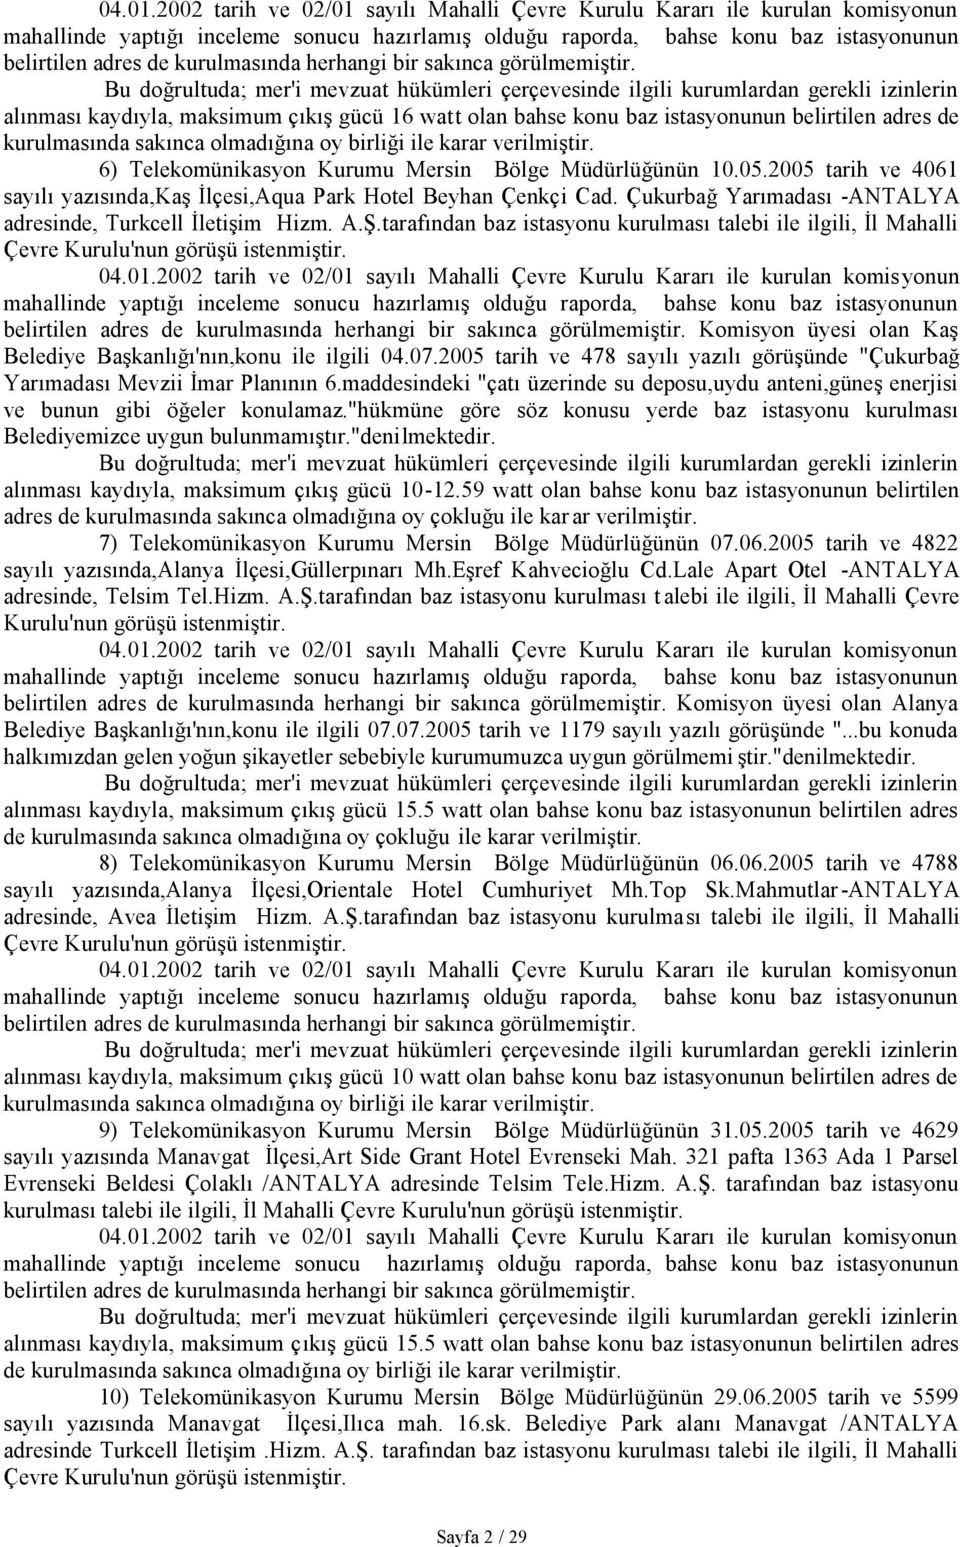 6) Telekomünikasyon Kurumu Mersin Bölge Müdürlüğünün 10.05.2005 tarih ve 4061 sayılı yazısında,kaş İlçesi,Aqua Park Hotel Beyhan Çenkçi Cad.